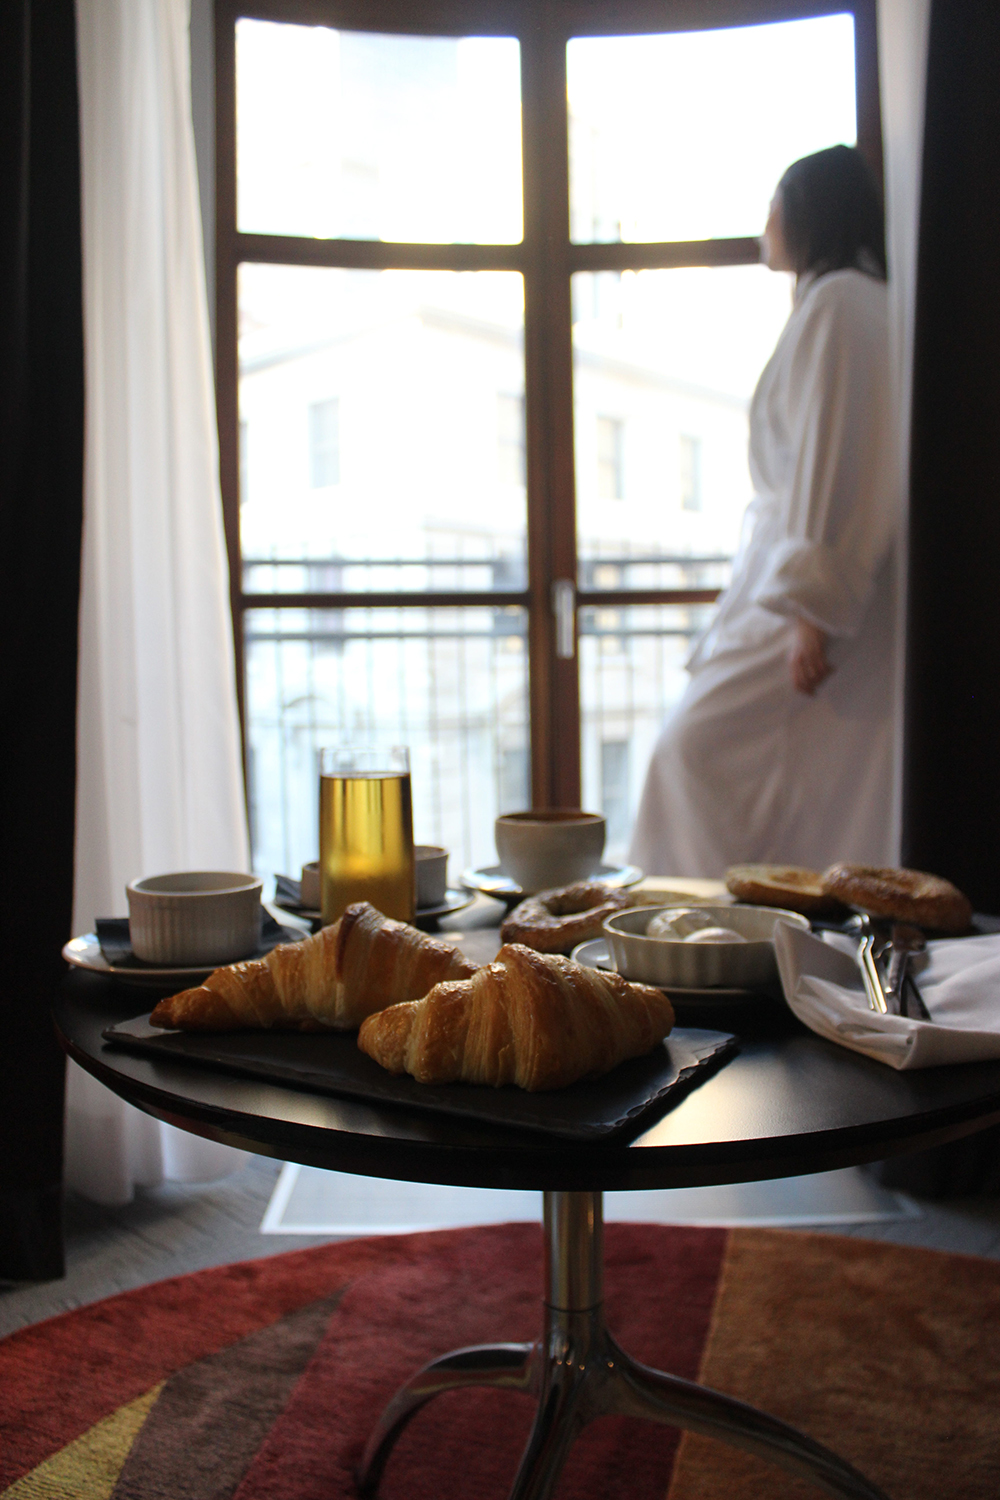 Café da manhã servido no quarto com uma incrível vista (Foto: Flymaniacs)